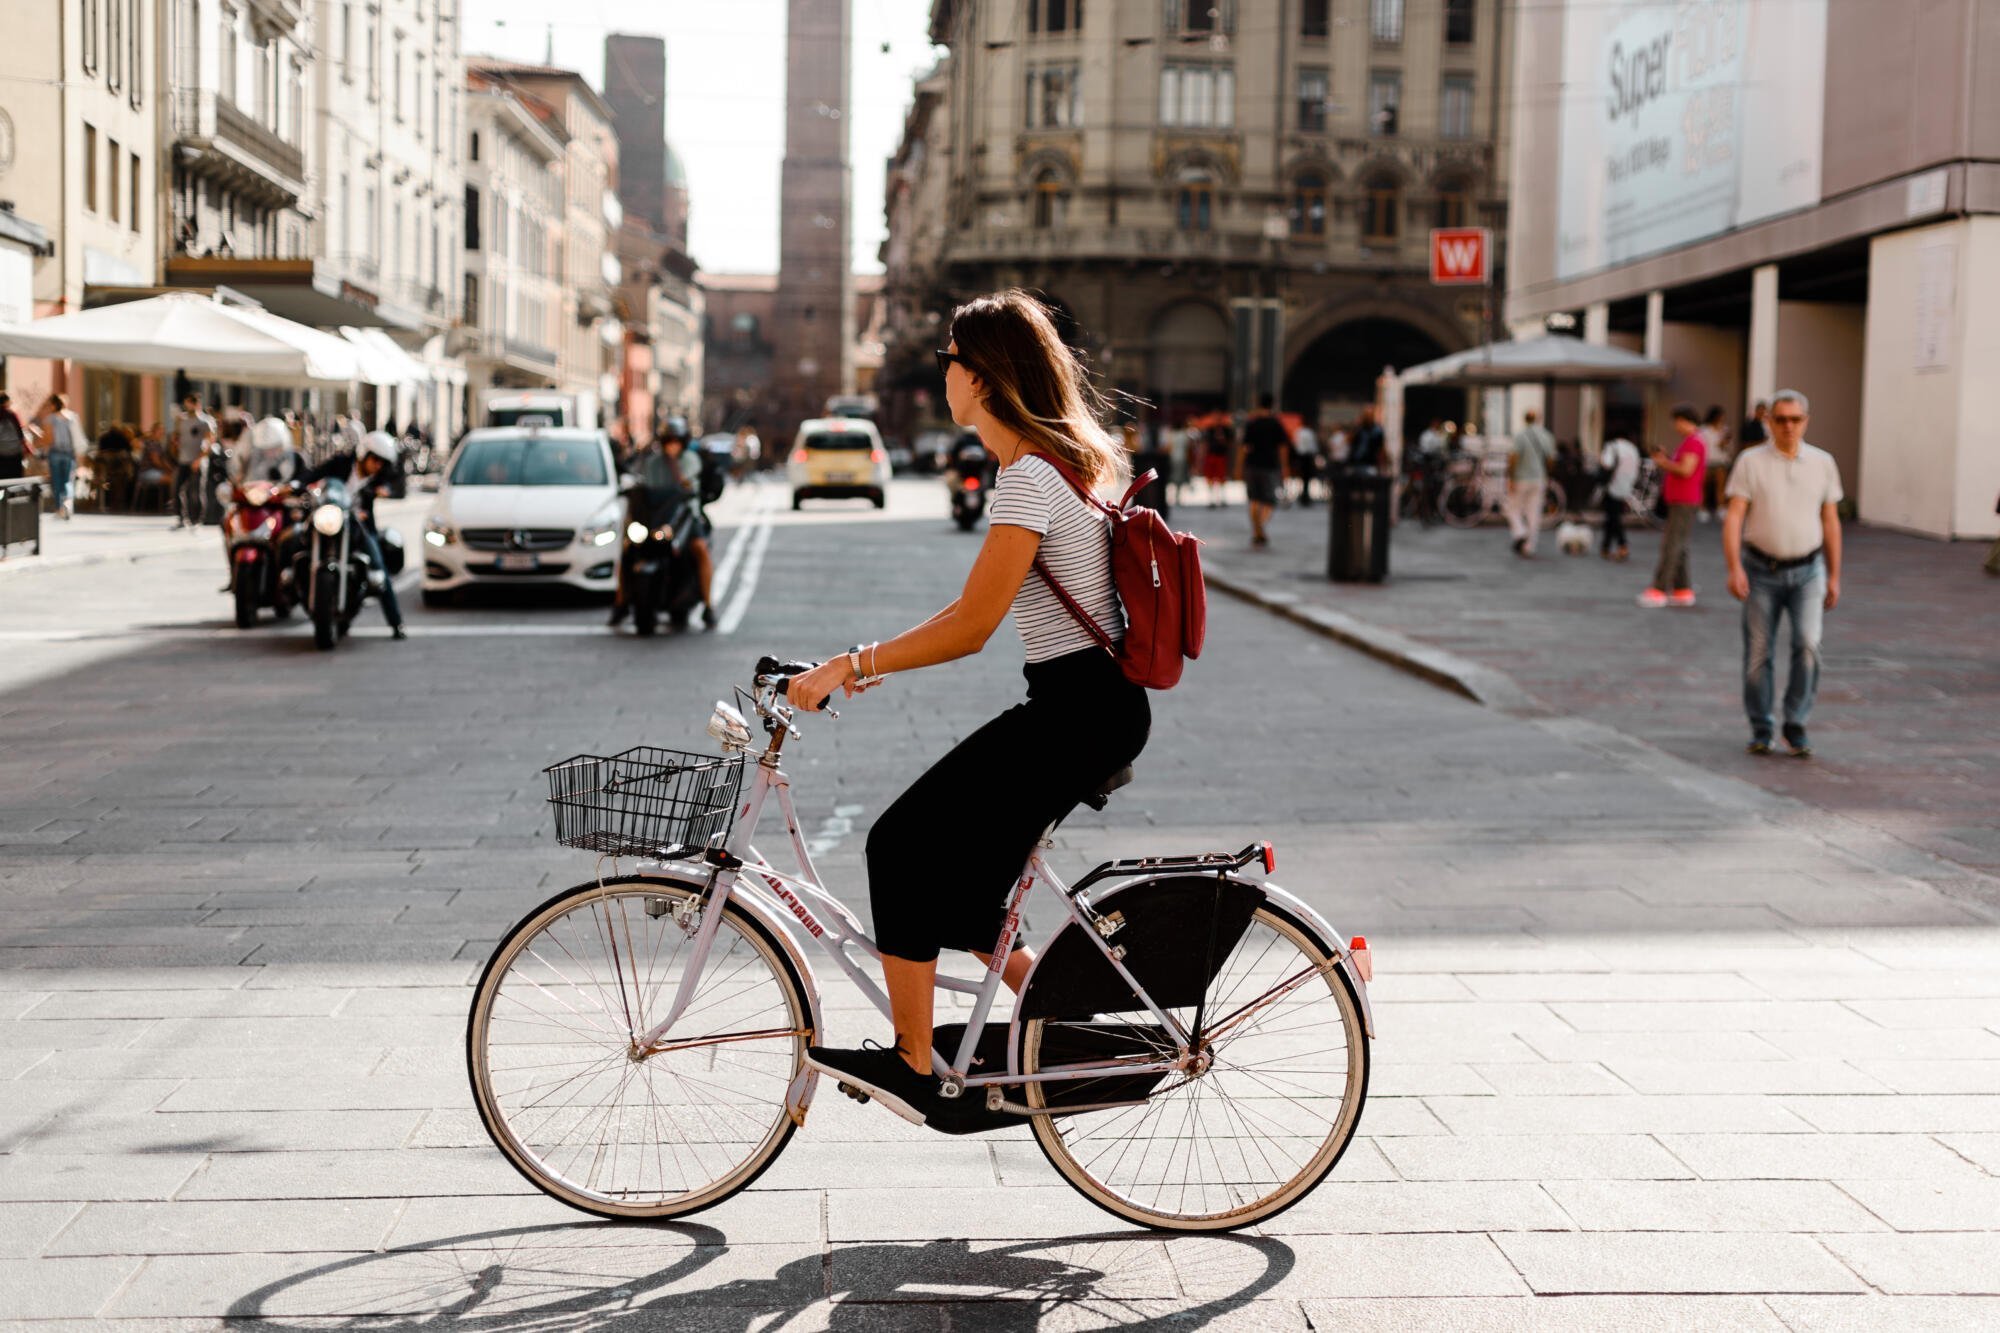 Key takeaways from CIE Webinar: Bike share is public transport